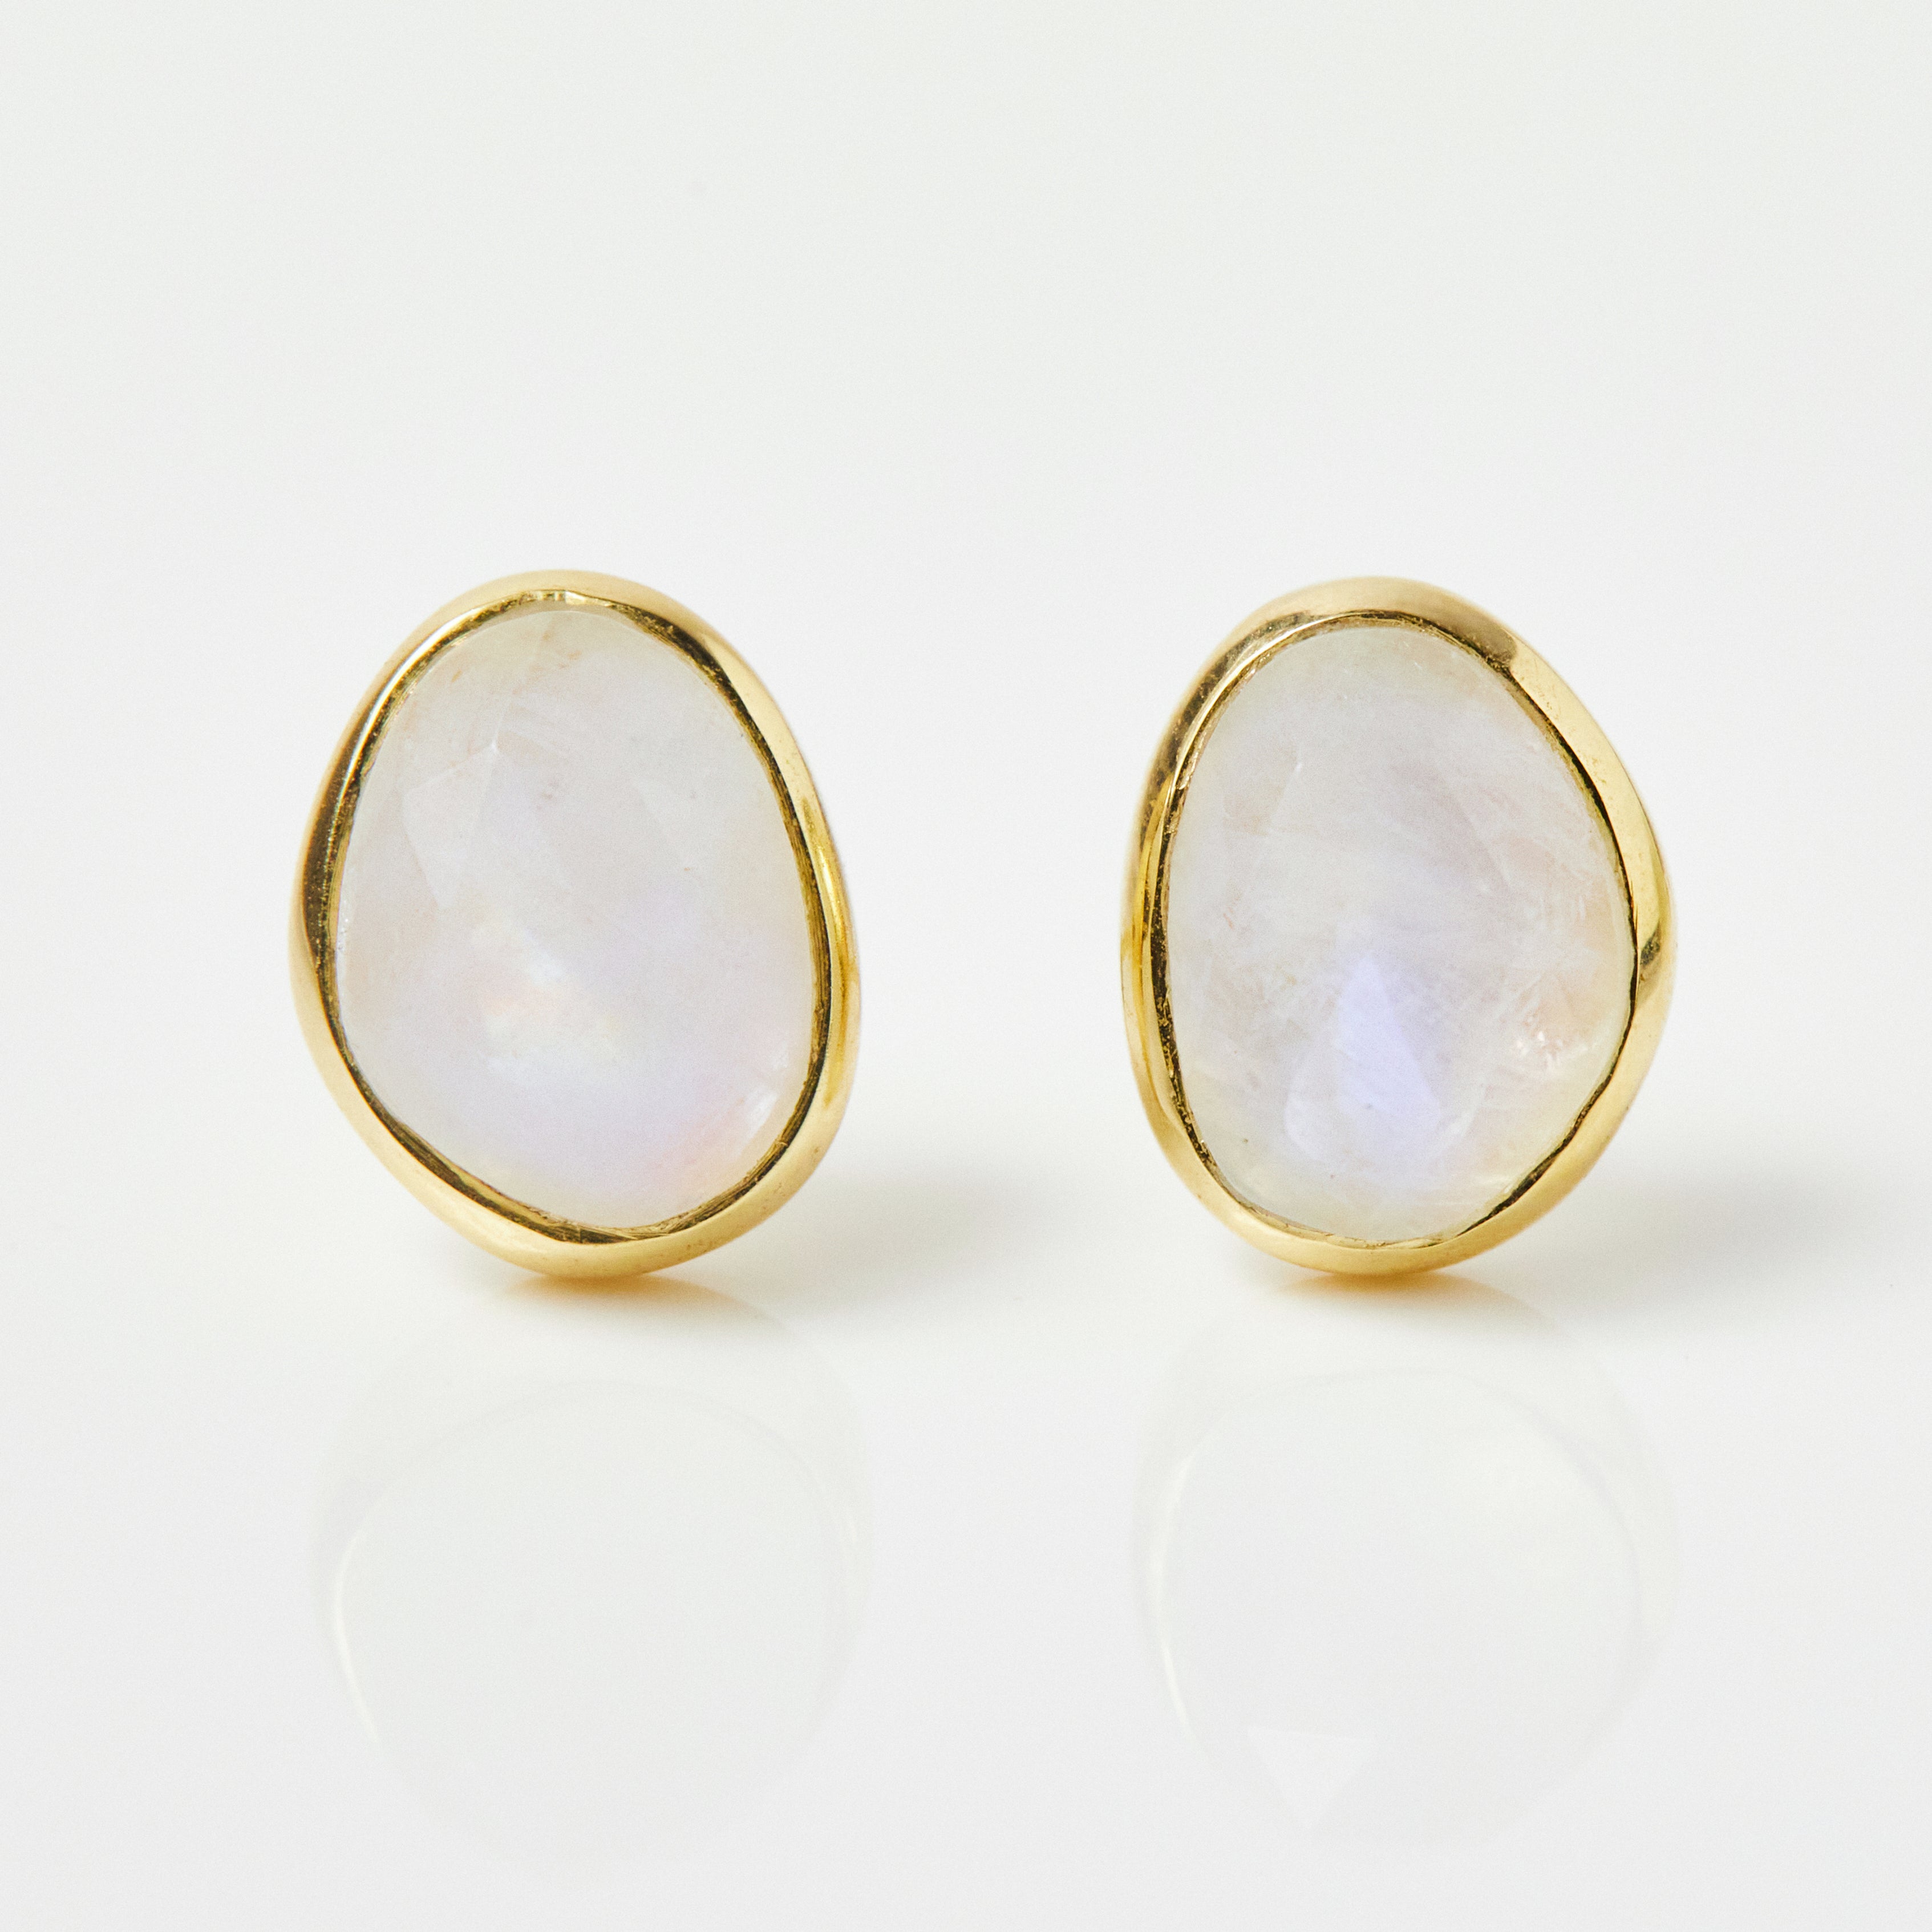 Simple Moonstone Earrings in Gold Vermeil - Earrings - Carrie Elizabeth